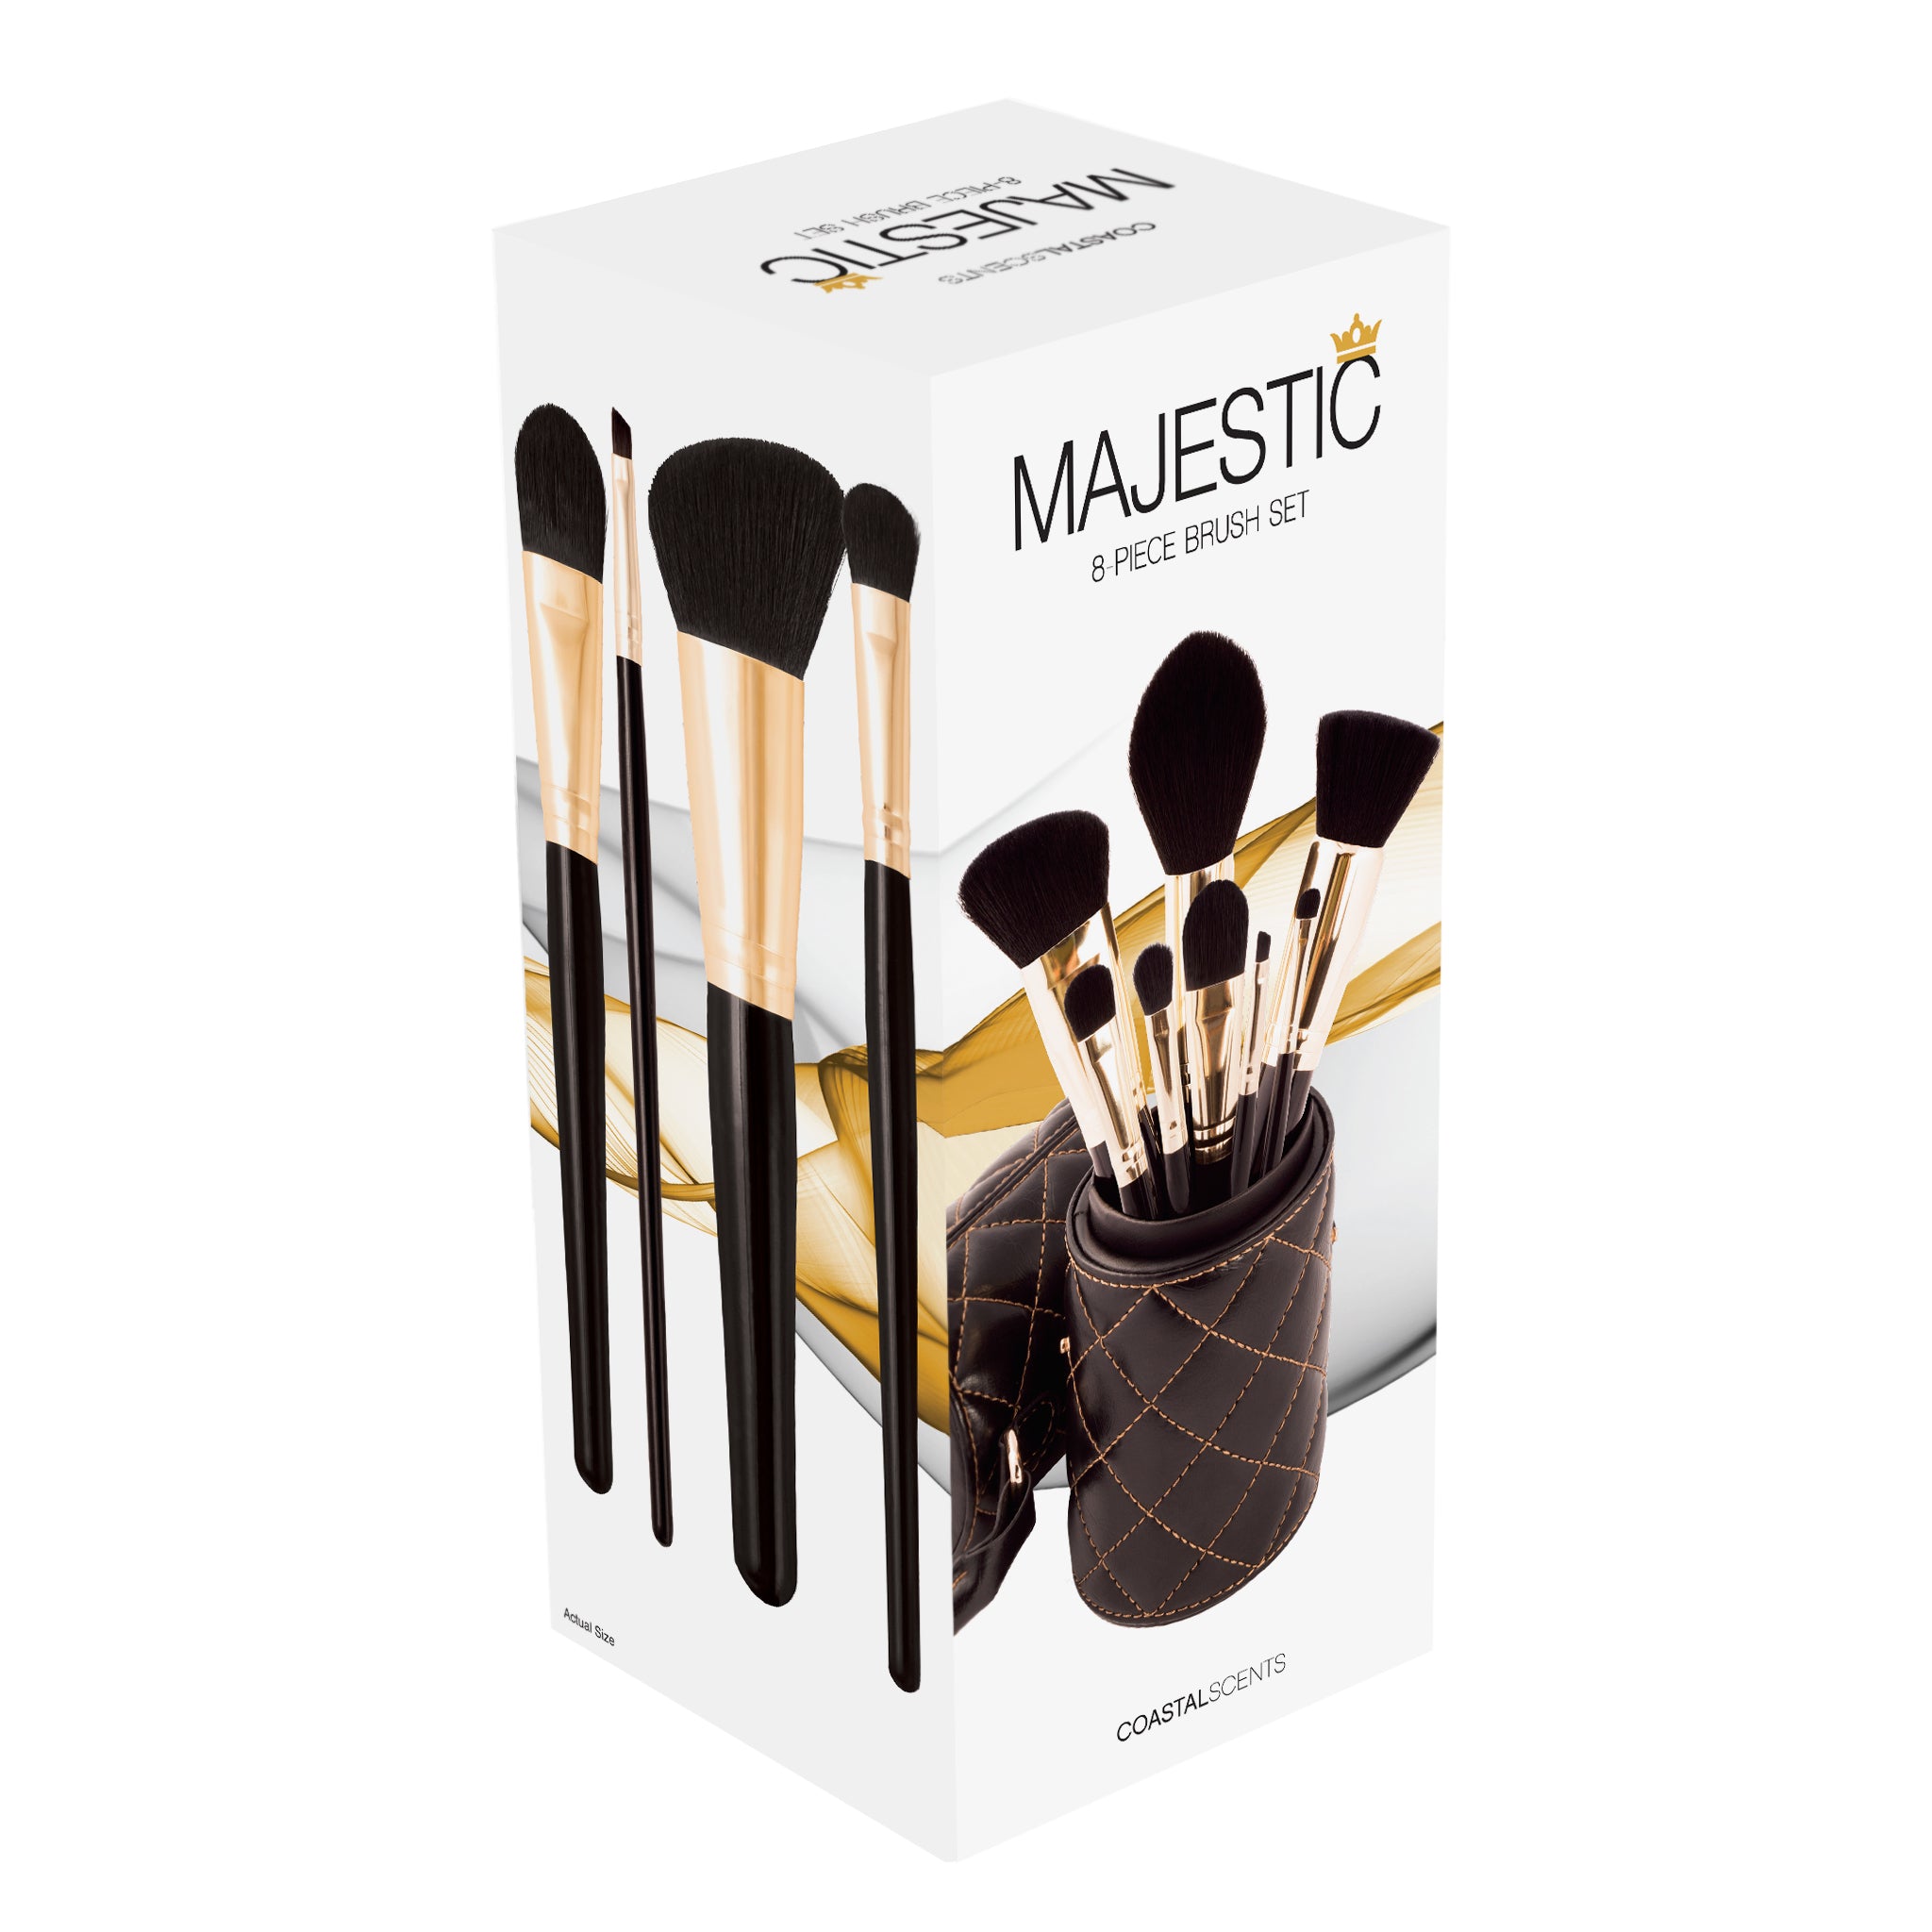 Majestic Makeup Brush Set